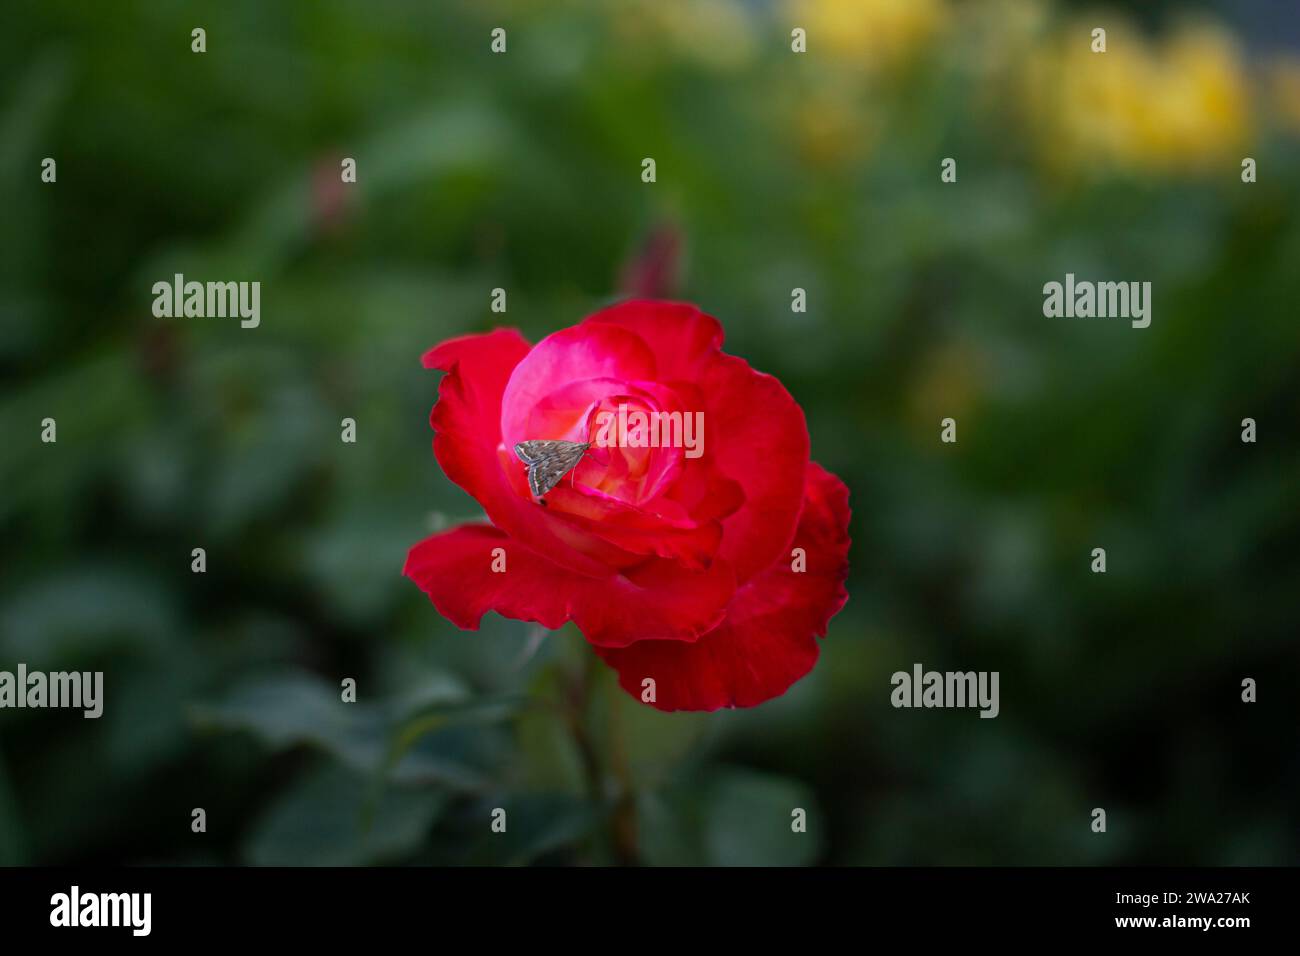 Nahaufnahme schöne rote Rose mit einem MottenSchmetterling auf seinen Blütenblättern, die im Garten wächst Stockfoto